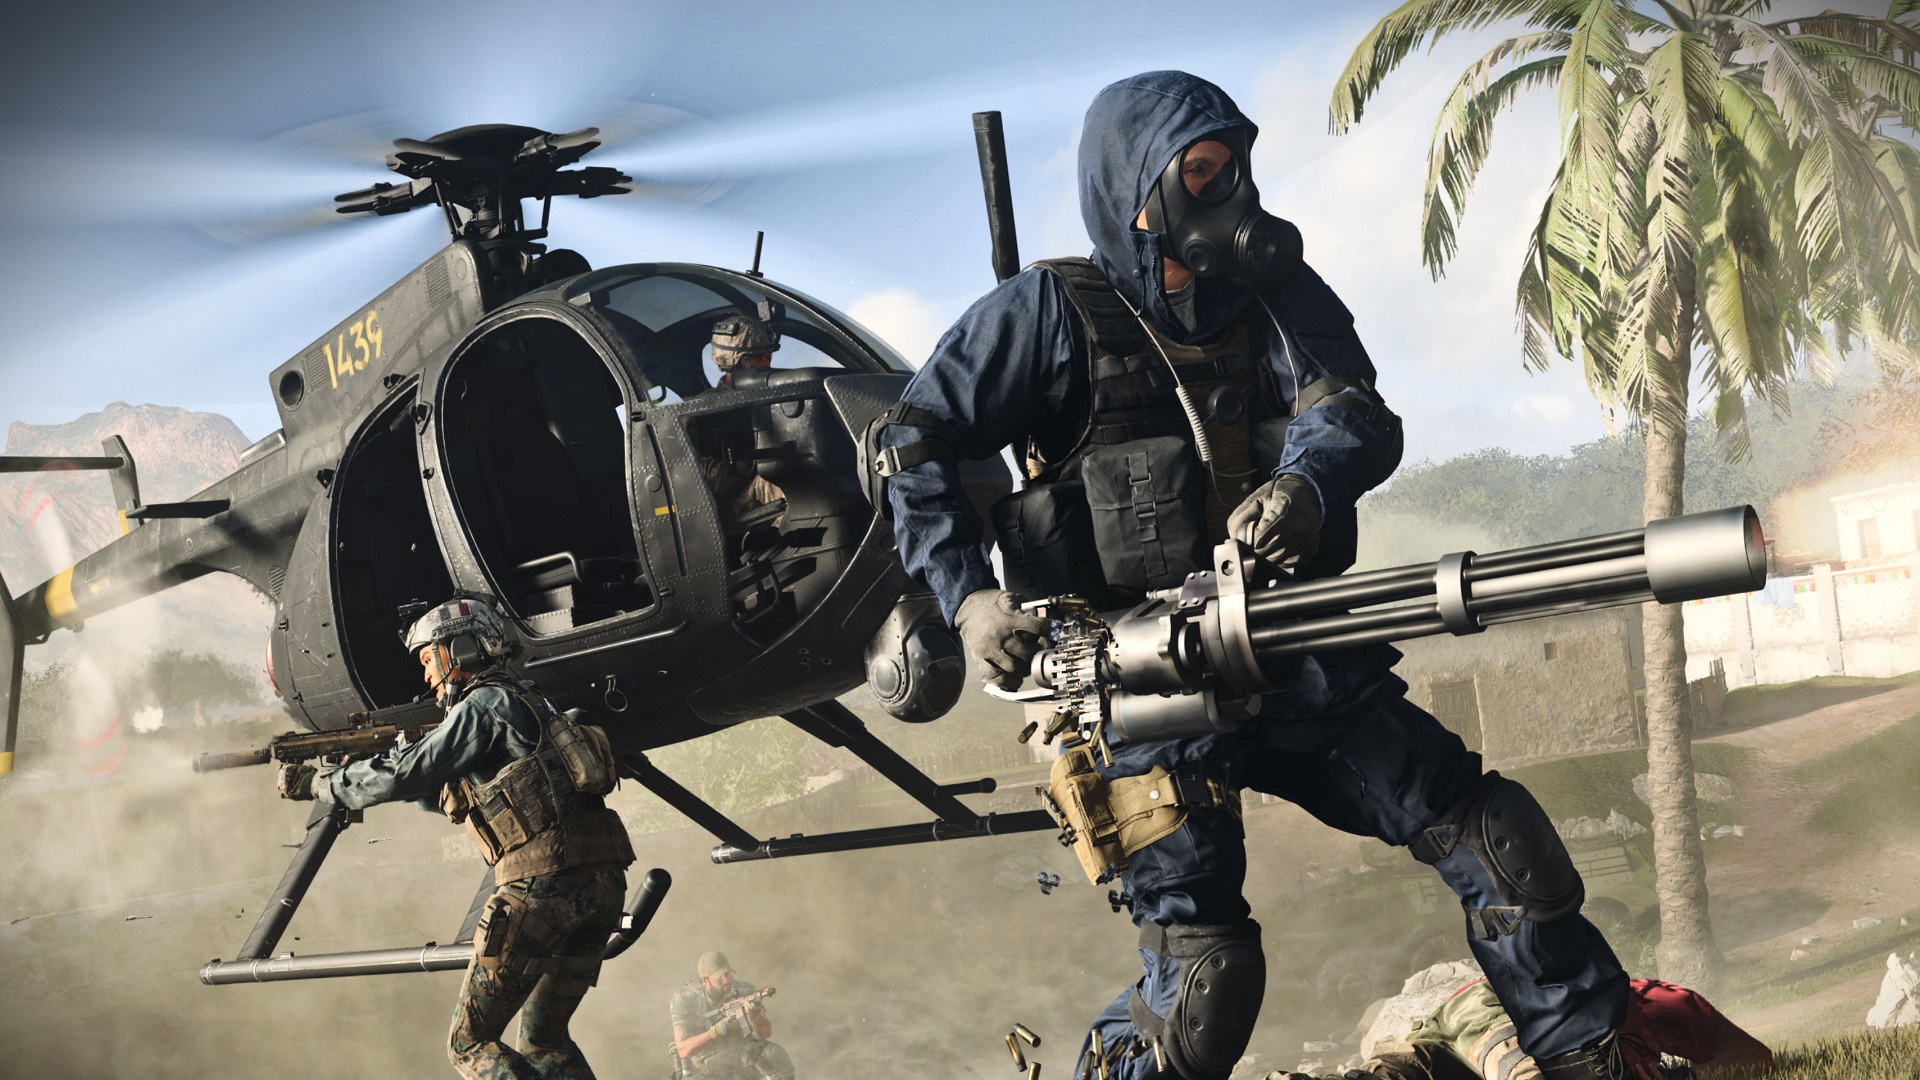 Call of Duty Modern Warfare split screen 2 player couch Co-op 2019 